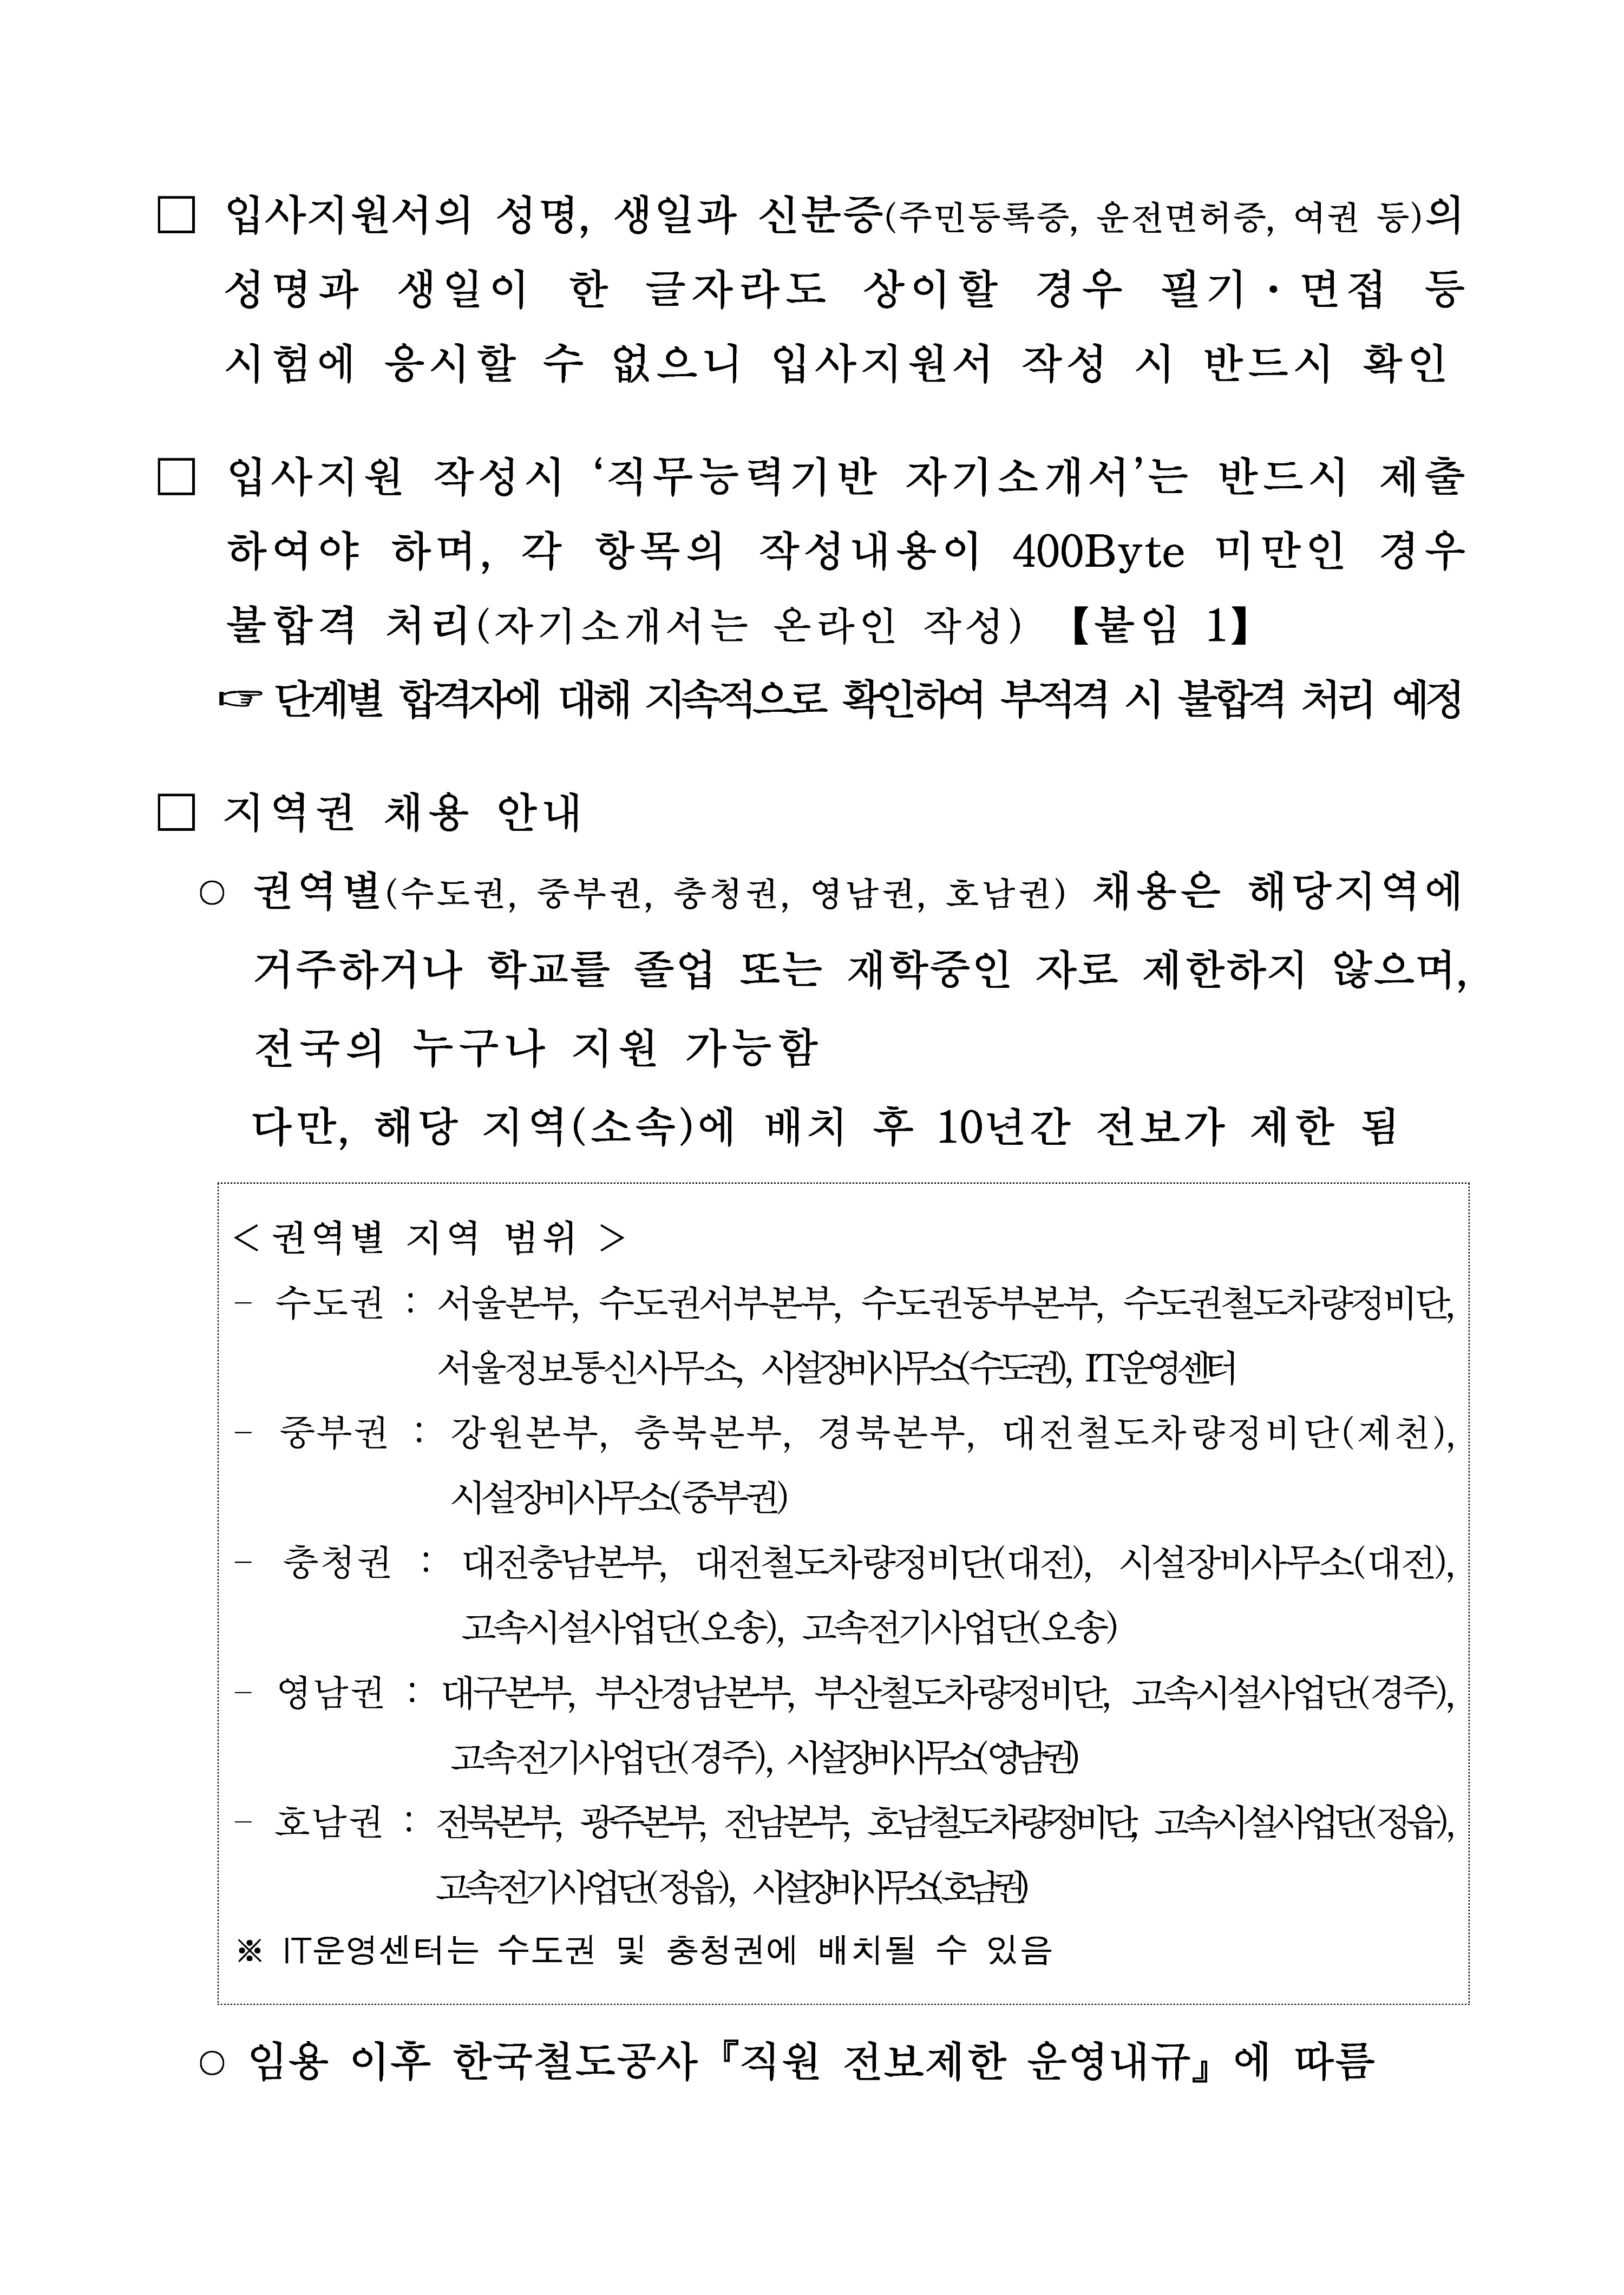 2020년 상반기 한국철도 신입사원 채용 공고문_페이지_02.jpg